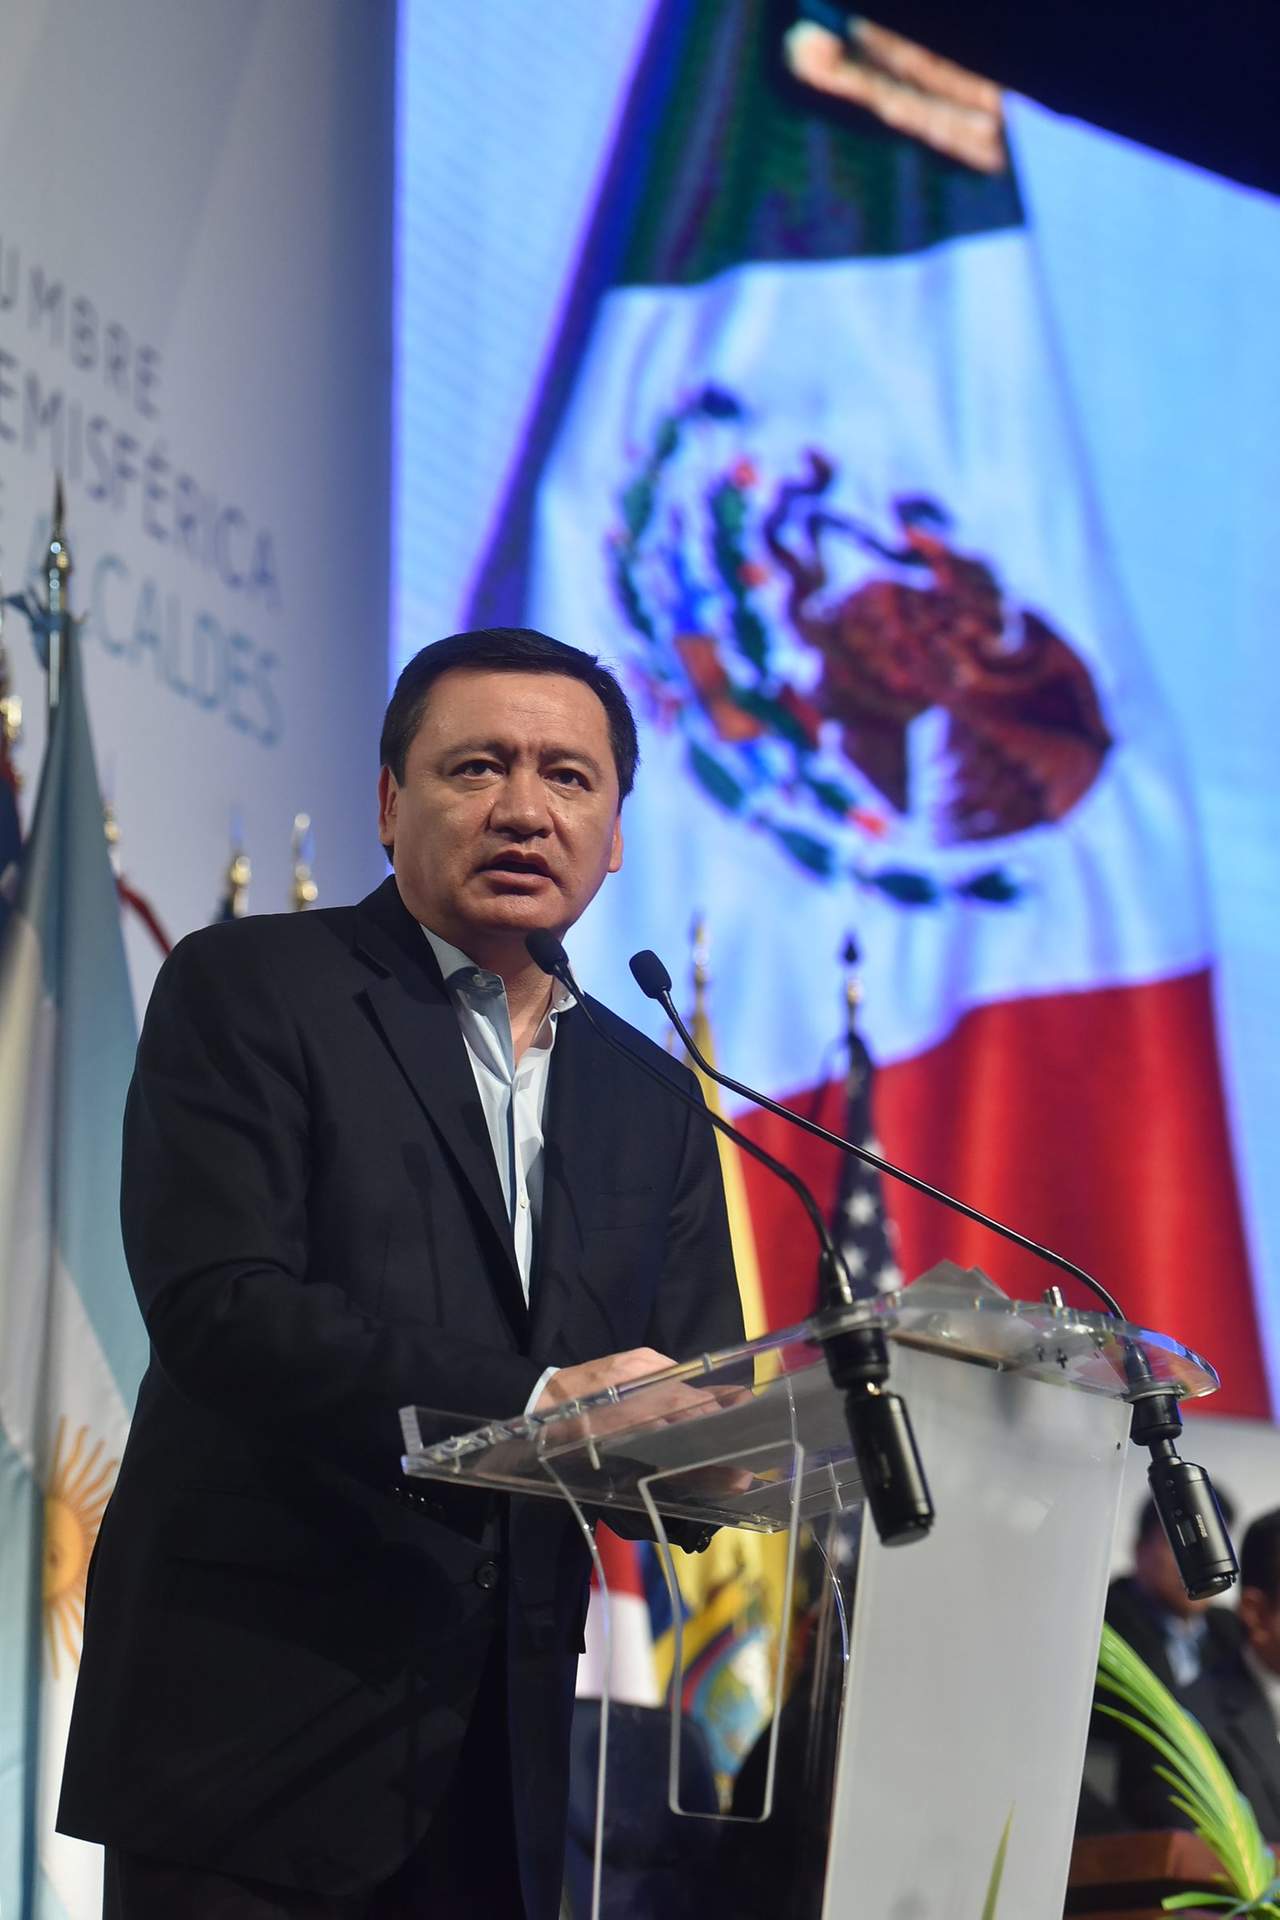  El secretario de Gobernación, Miguel Ángel Osorio Chong (imagen) aseguró que estará atento a las reuniones de la Junta de Coordinación Política de la Cámara de Diputados. (ARCHIVO)